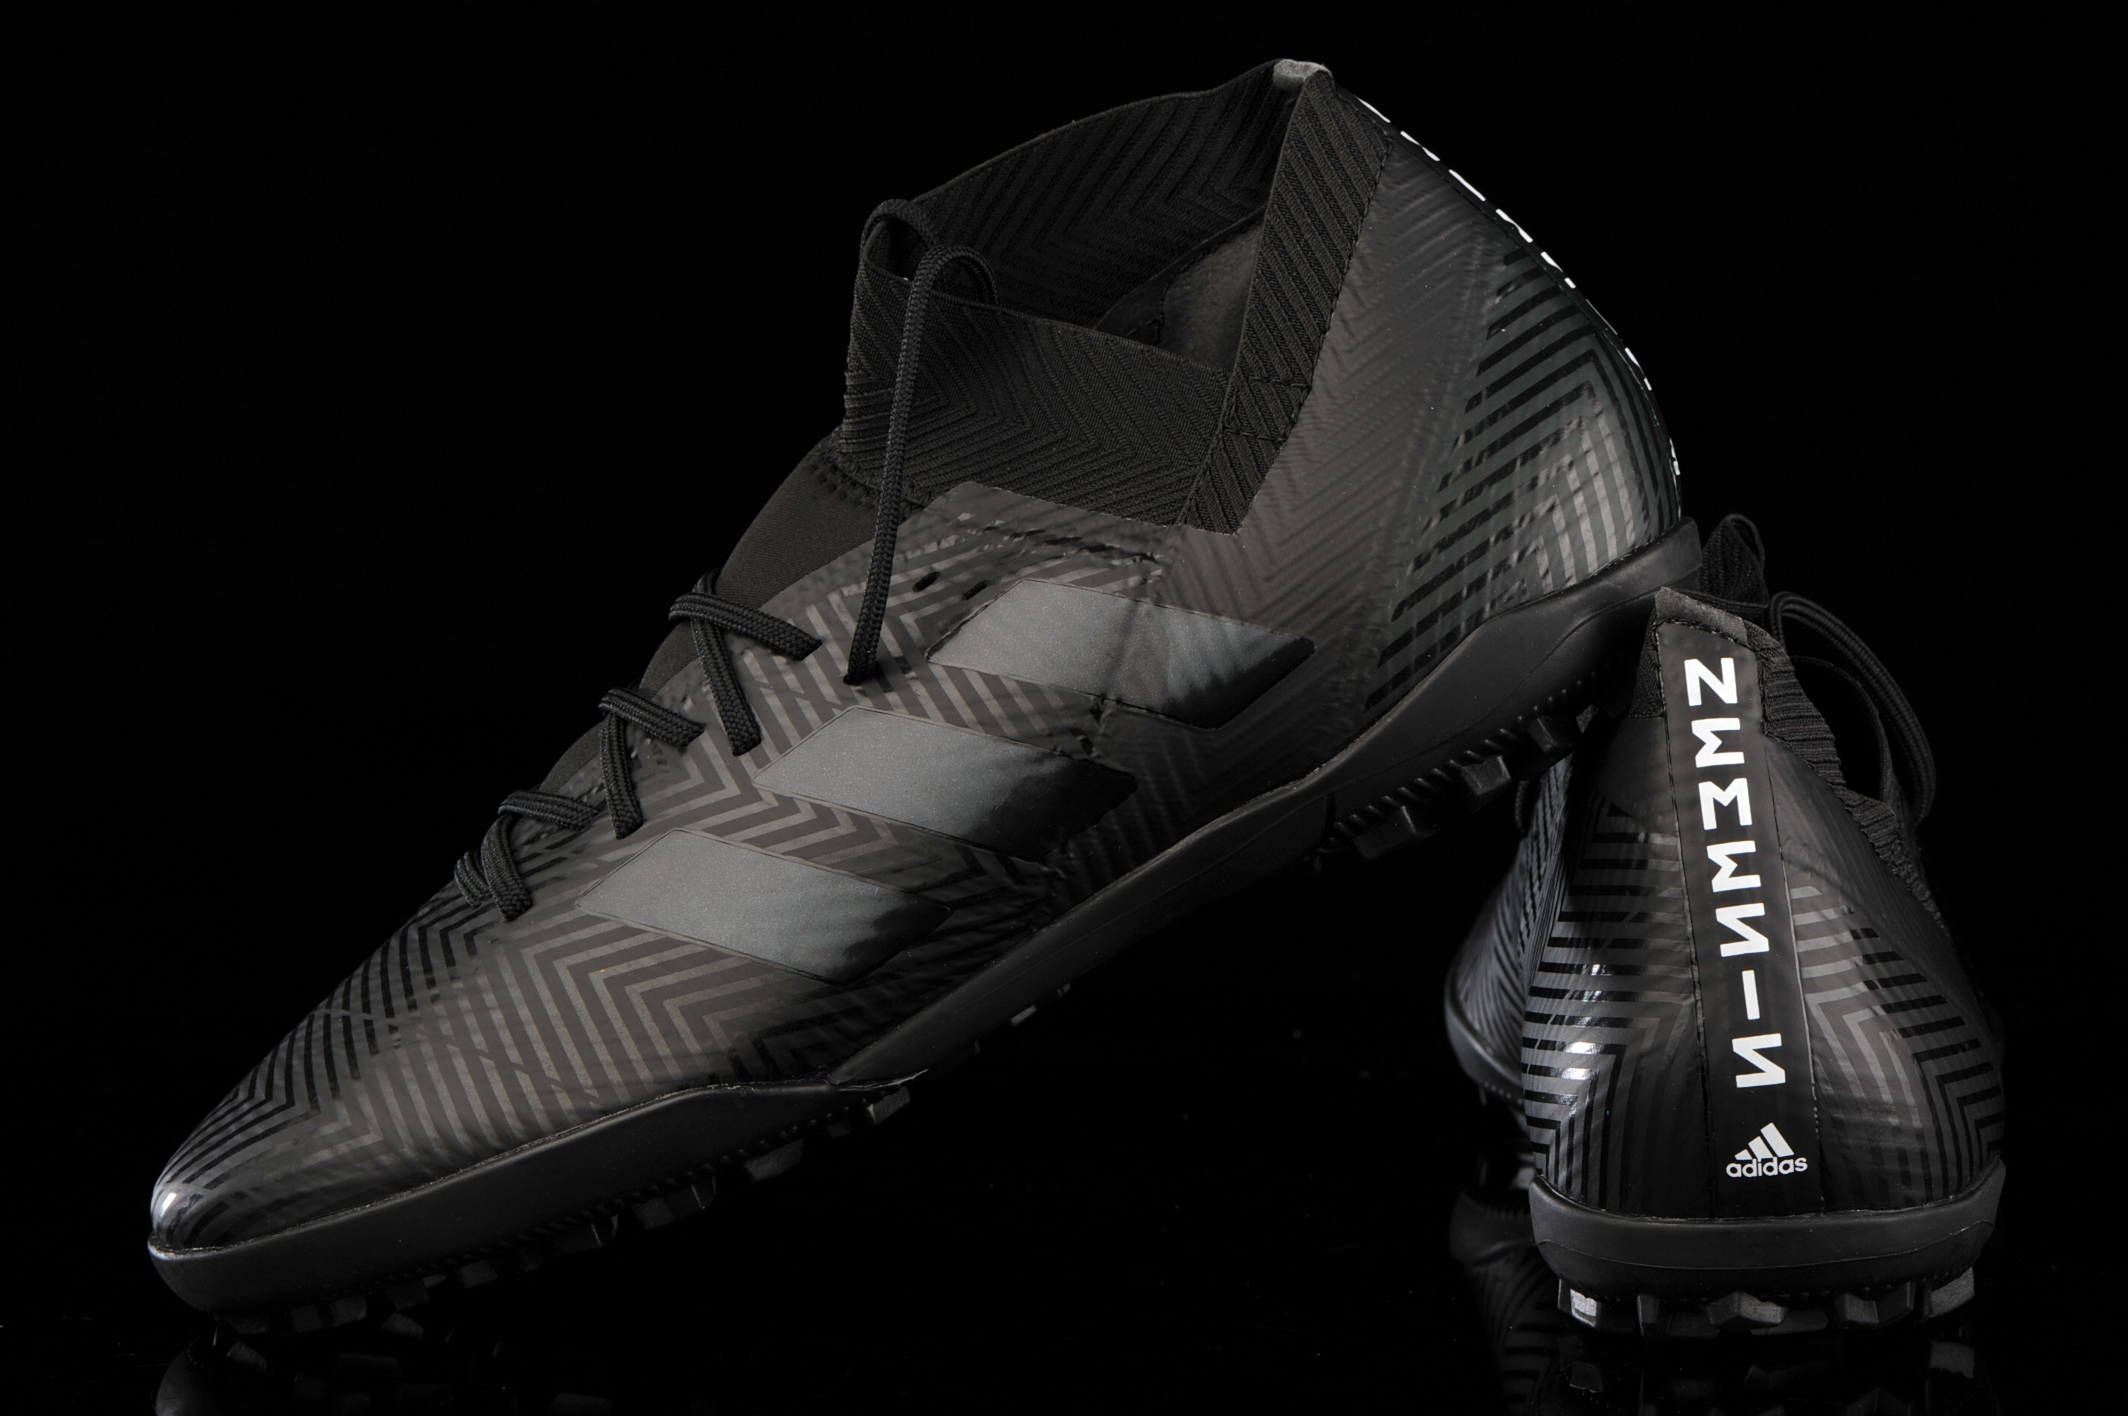 adidas Nemeziz Tango 18.3 TF DB2211 | R-GOL.com - Football boots \u0026 equipment